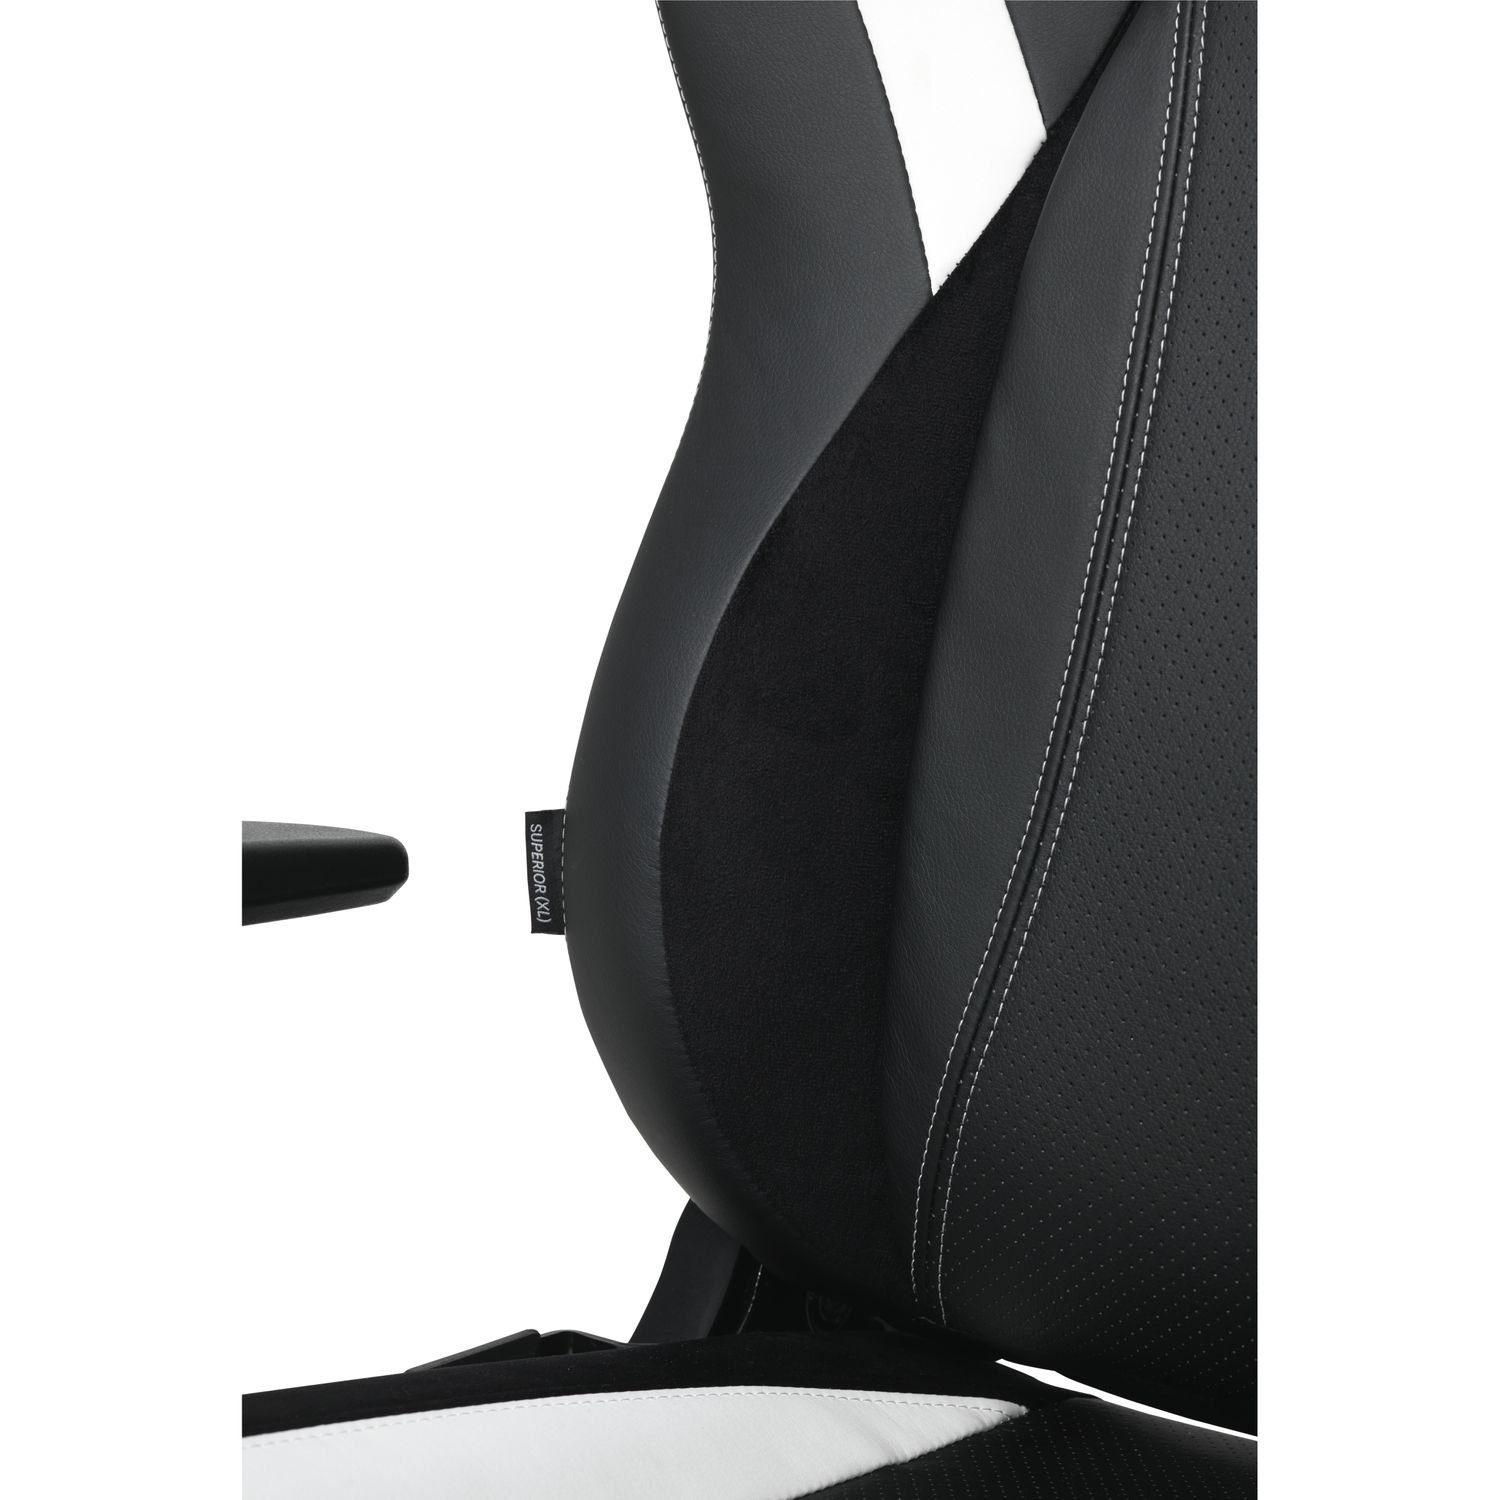 E-SPORT Einstellbare (kein Armlehne Set), Büro XL Stuhl XL XL GAMING Rücken-/ Stuhl und PRO / SUPERIOR, L33T Gaming-Stuhl